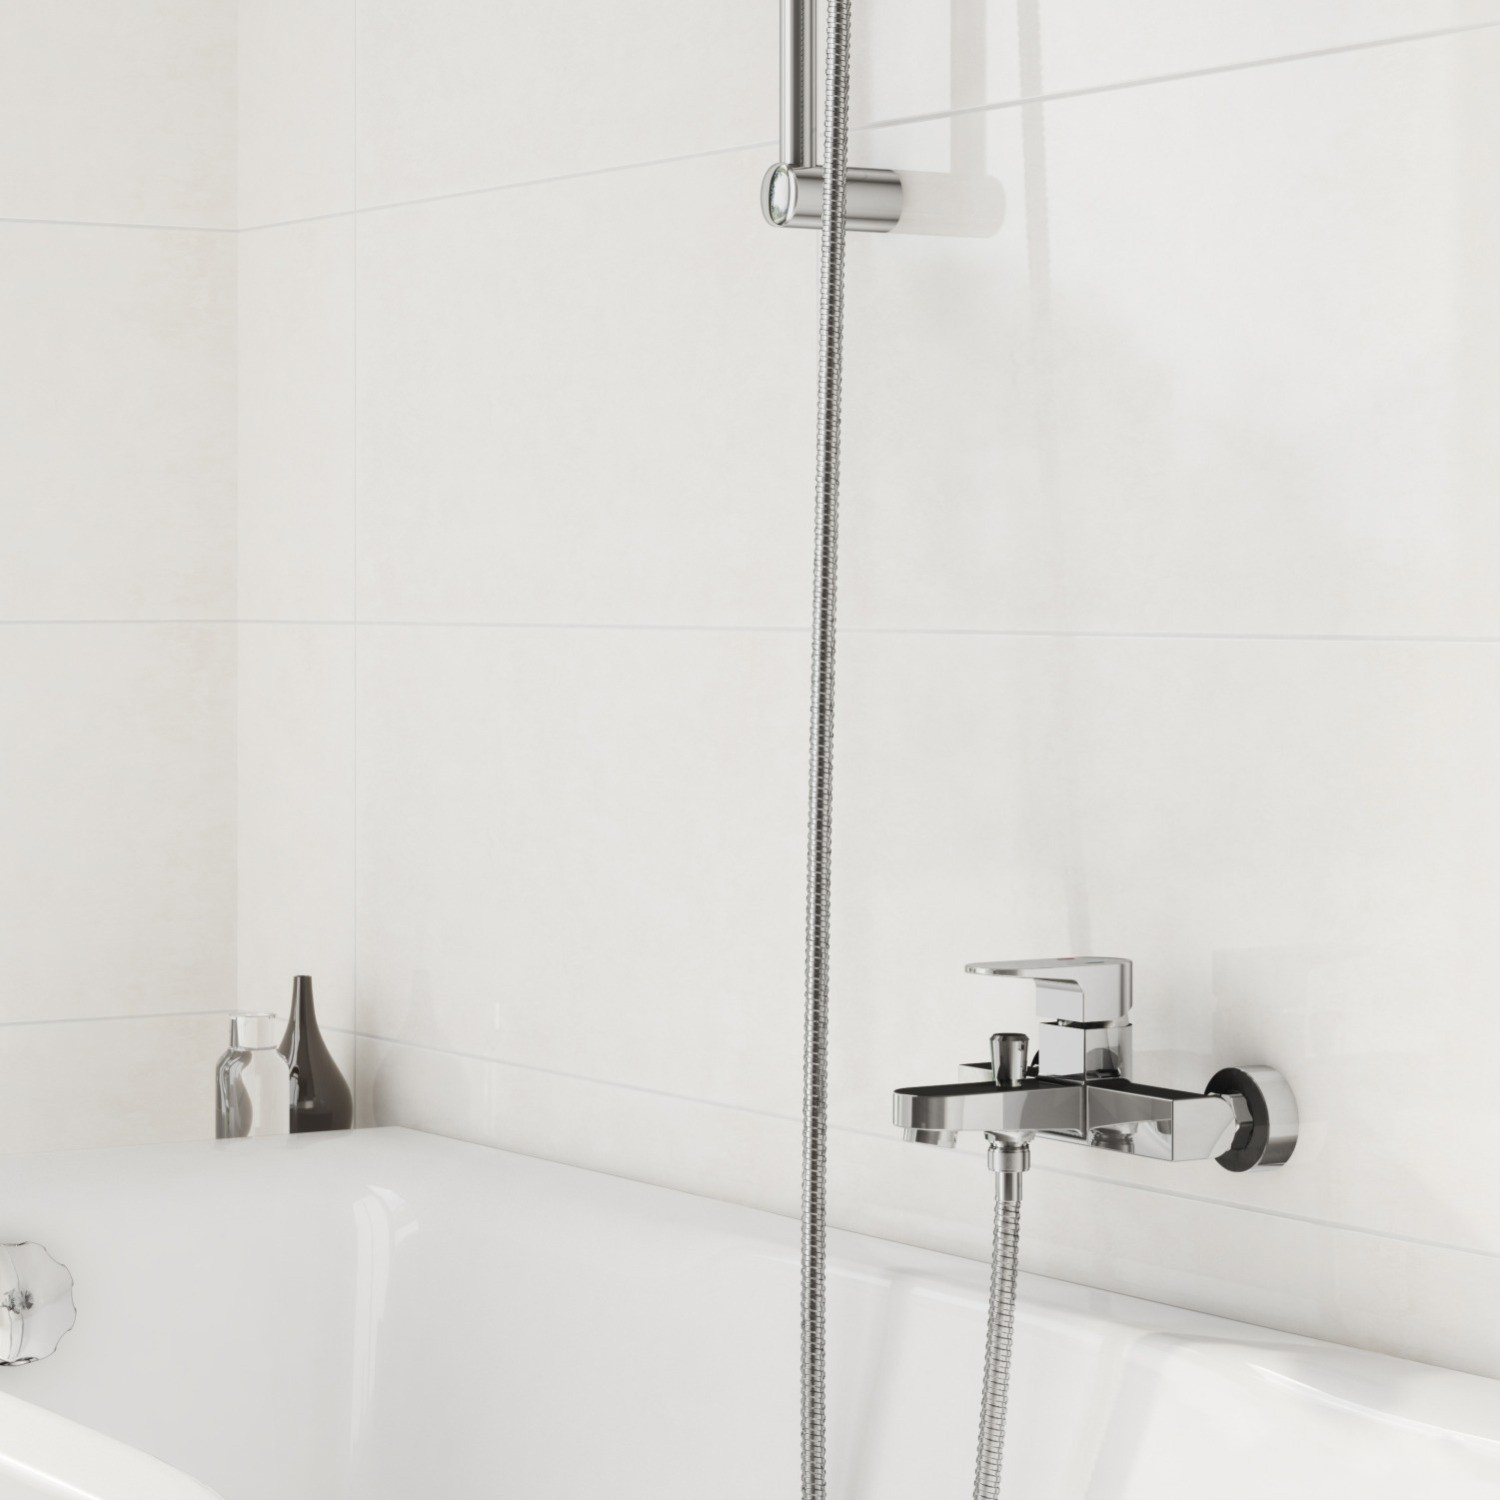 Смеситель для ванны и душа Cersanit Vigo S951-010 цена 2970.00 грн - фотография 2